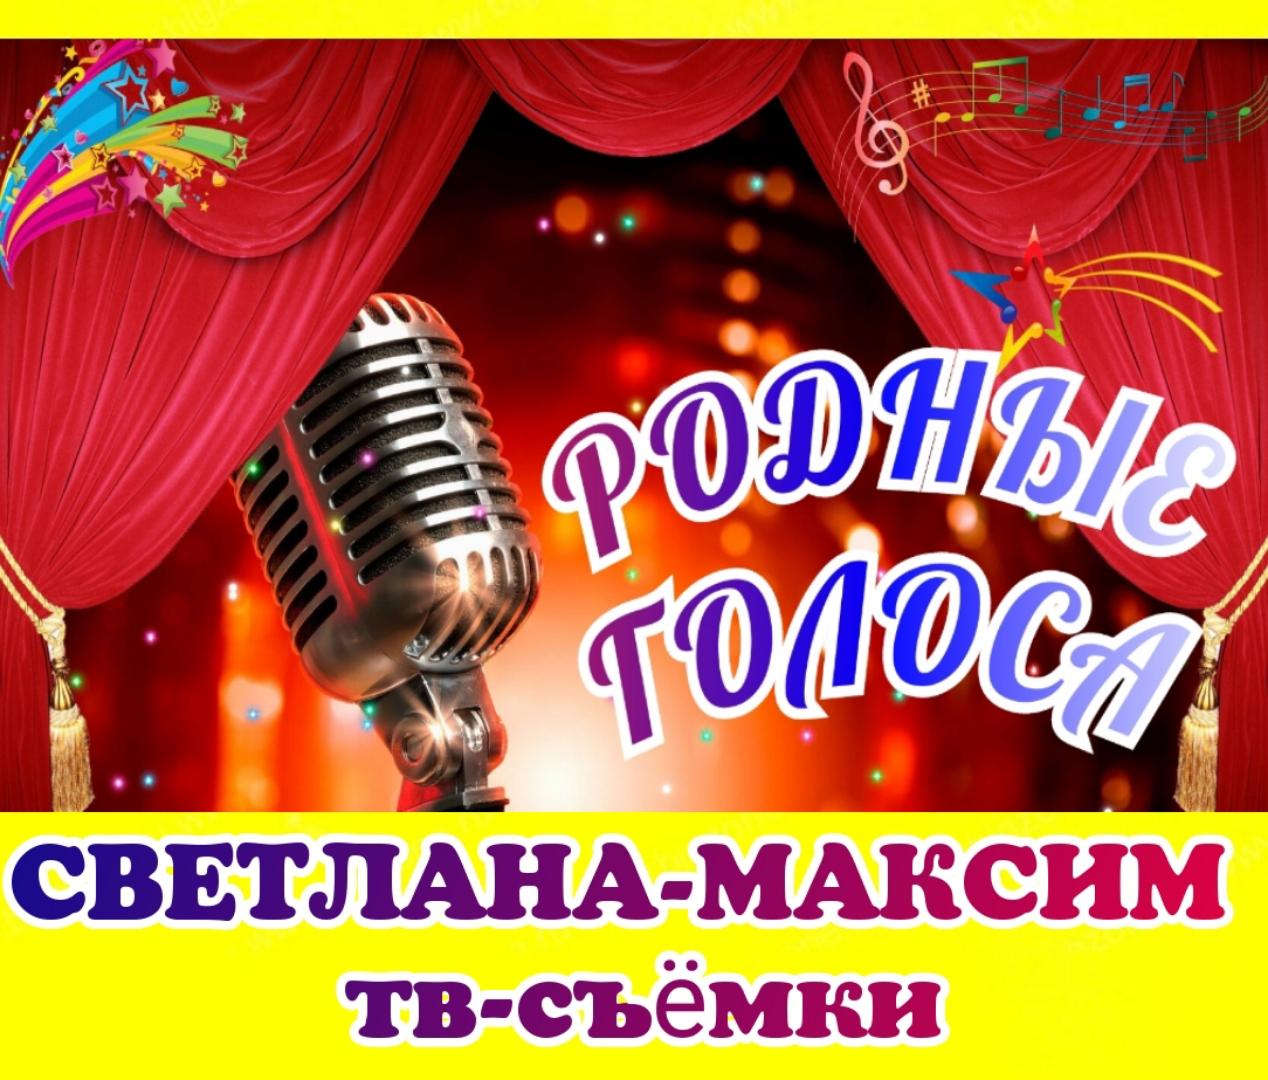 24 мая музыкальное шоу "Родные голоса".